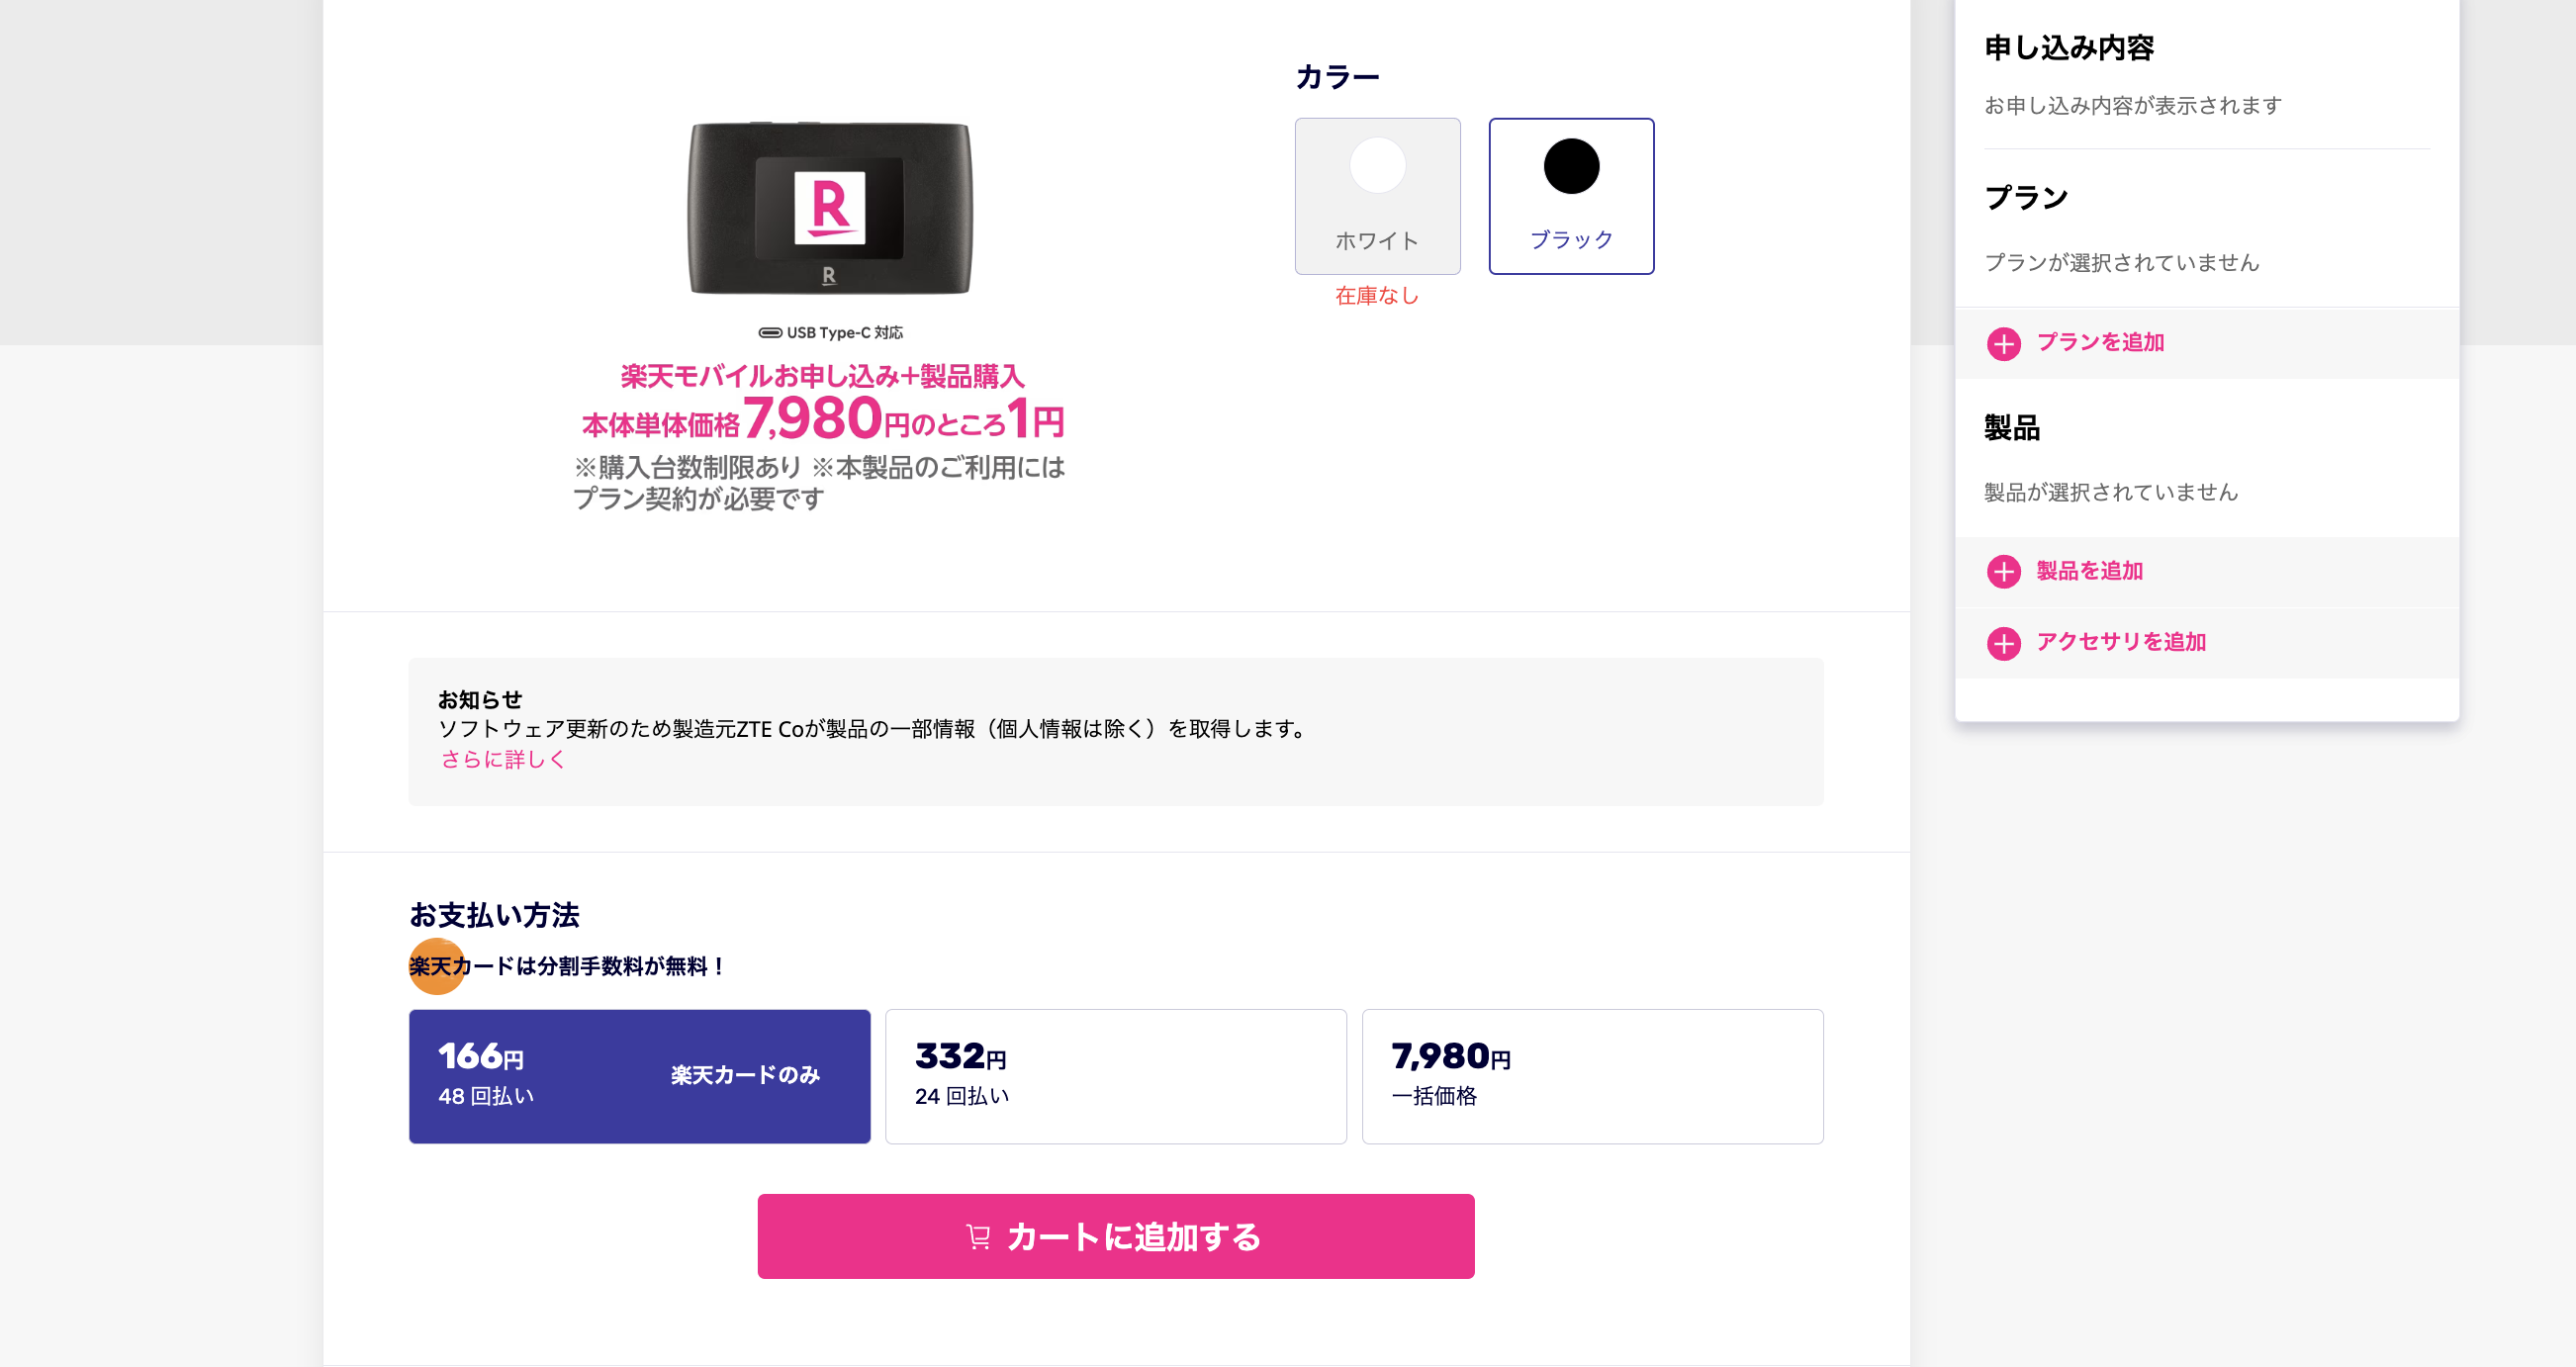 楽天モバイル「Rakuten WiFi Pocket 2C」の本体カラー選択ページ